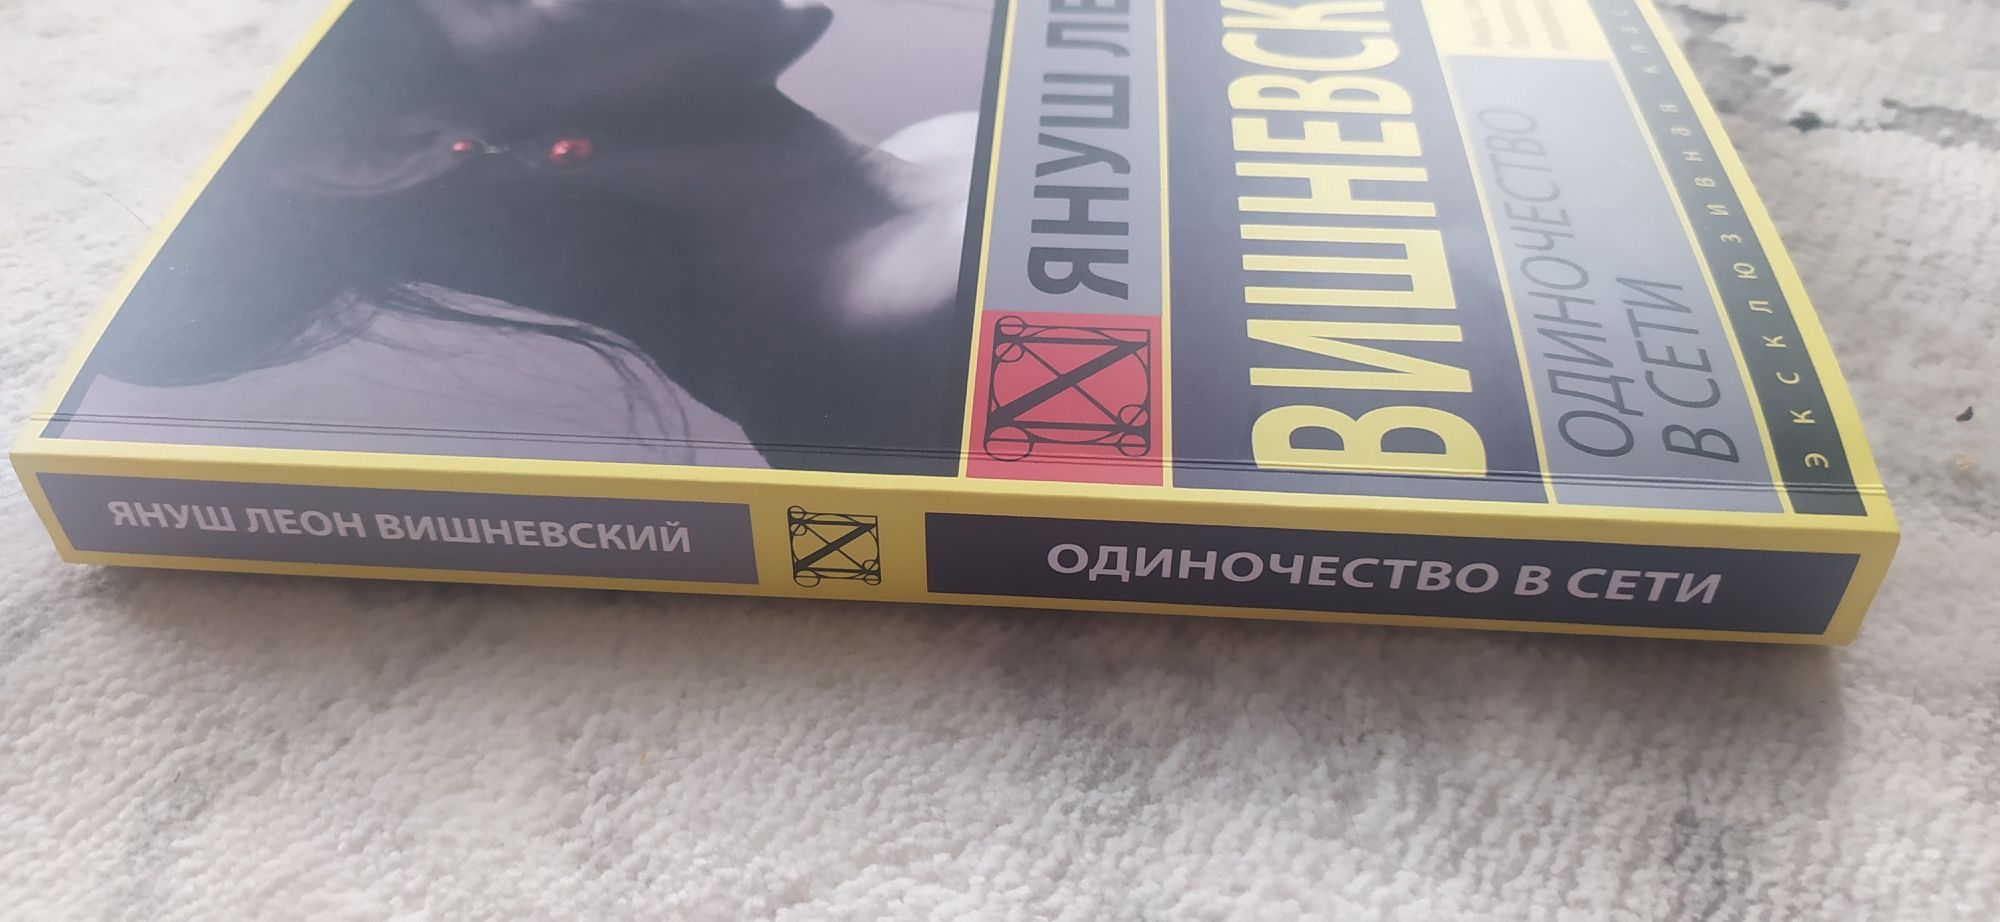 Книга " Одиночество в сети " Януш Леон Вишневский